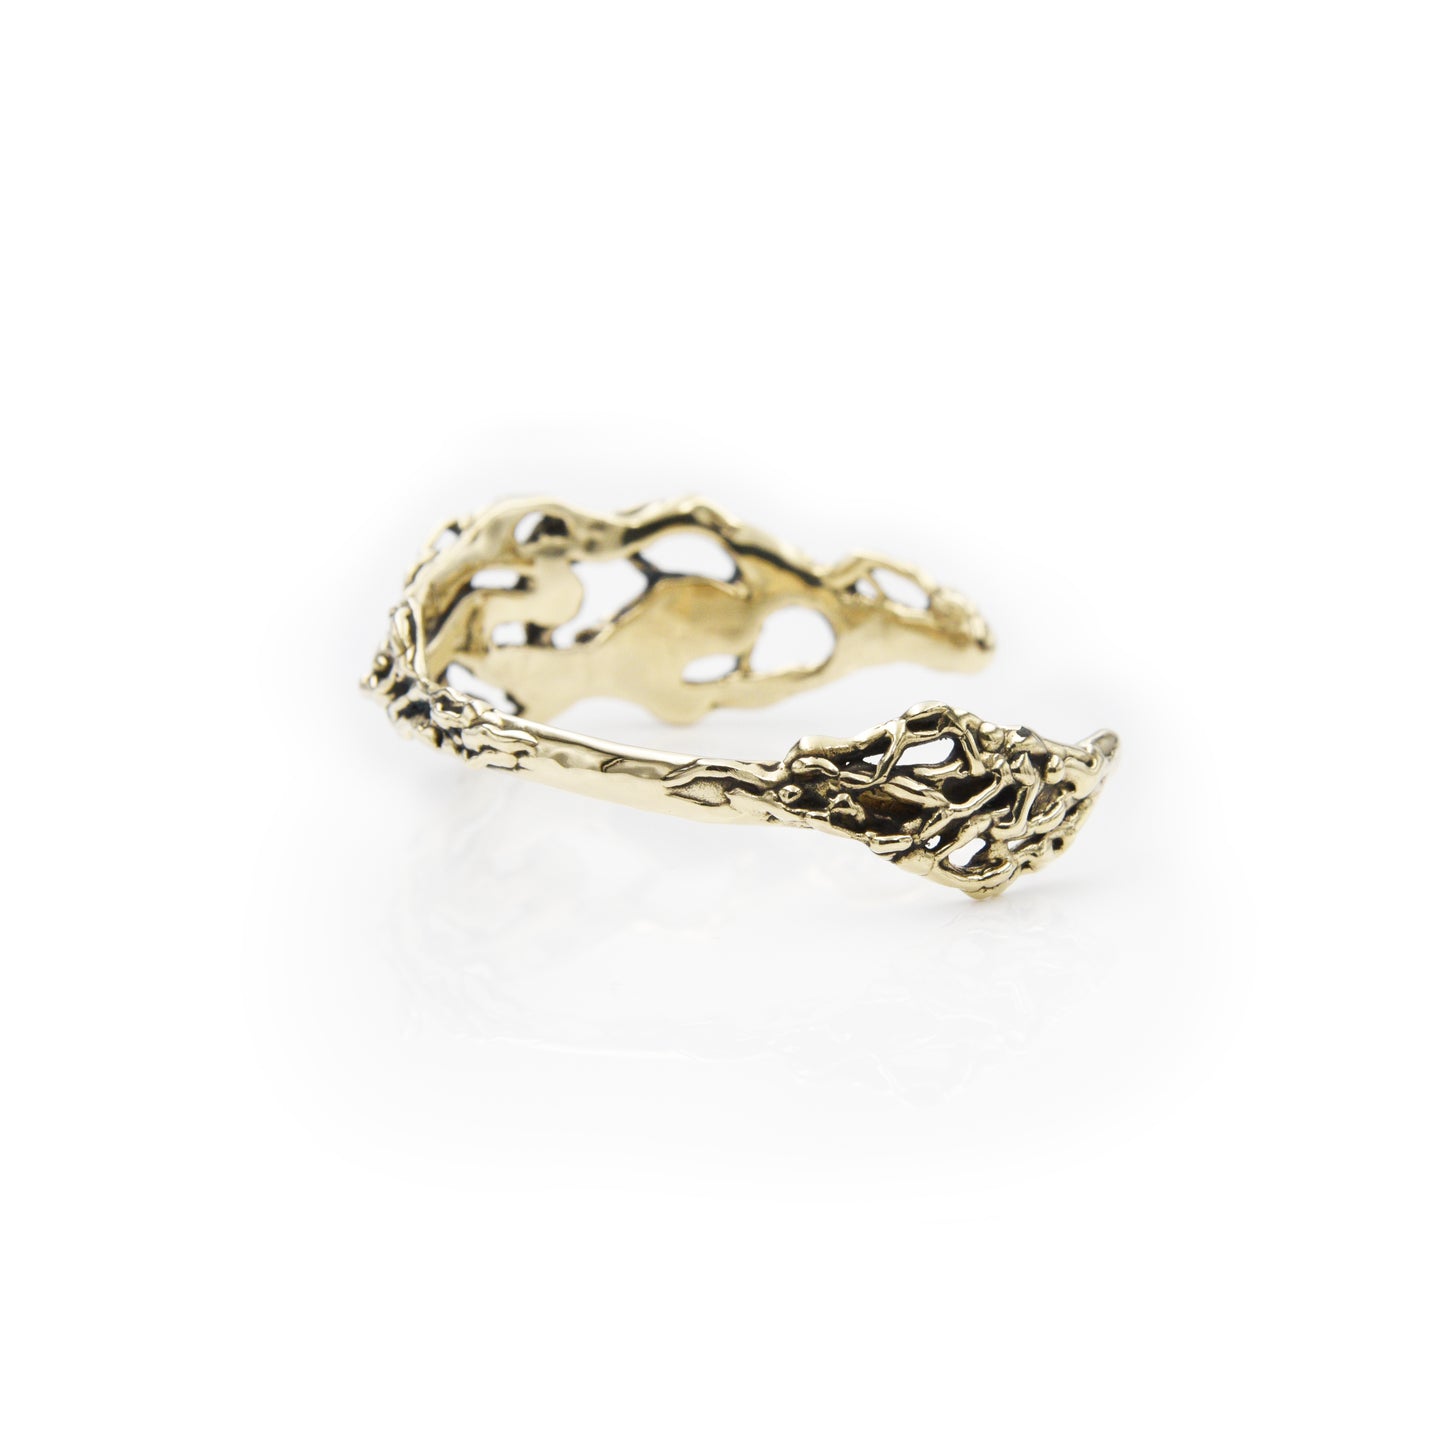 
                  
                    Aphrodite Cuff Bracelet - Spiritual Cuff Bracelet - Designer Jewelry - Statement Cuff Bracelet - Brass Cuff Bracelet - Free Form
                  
                